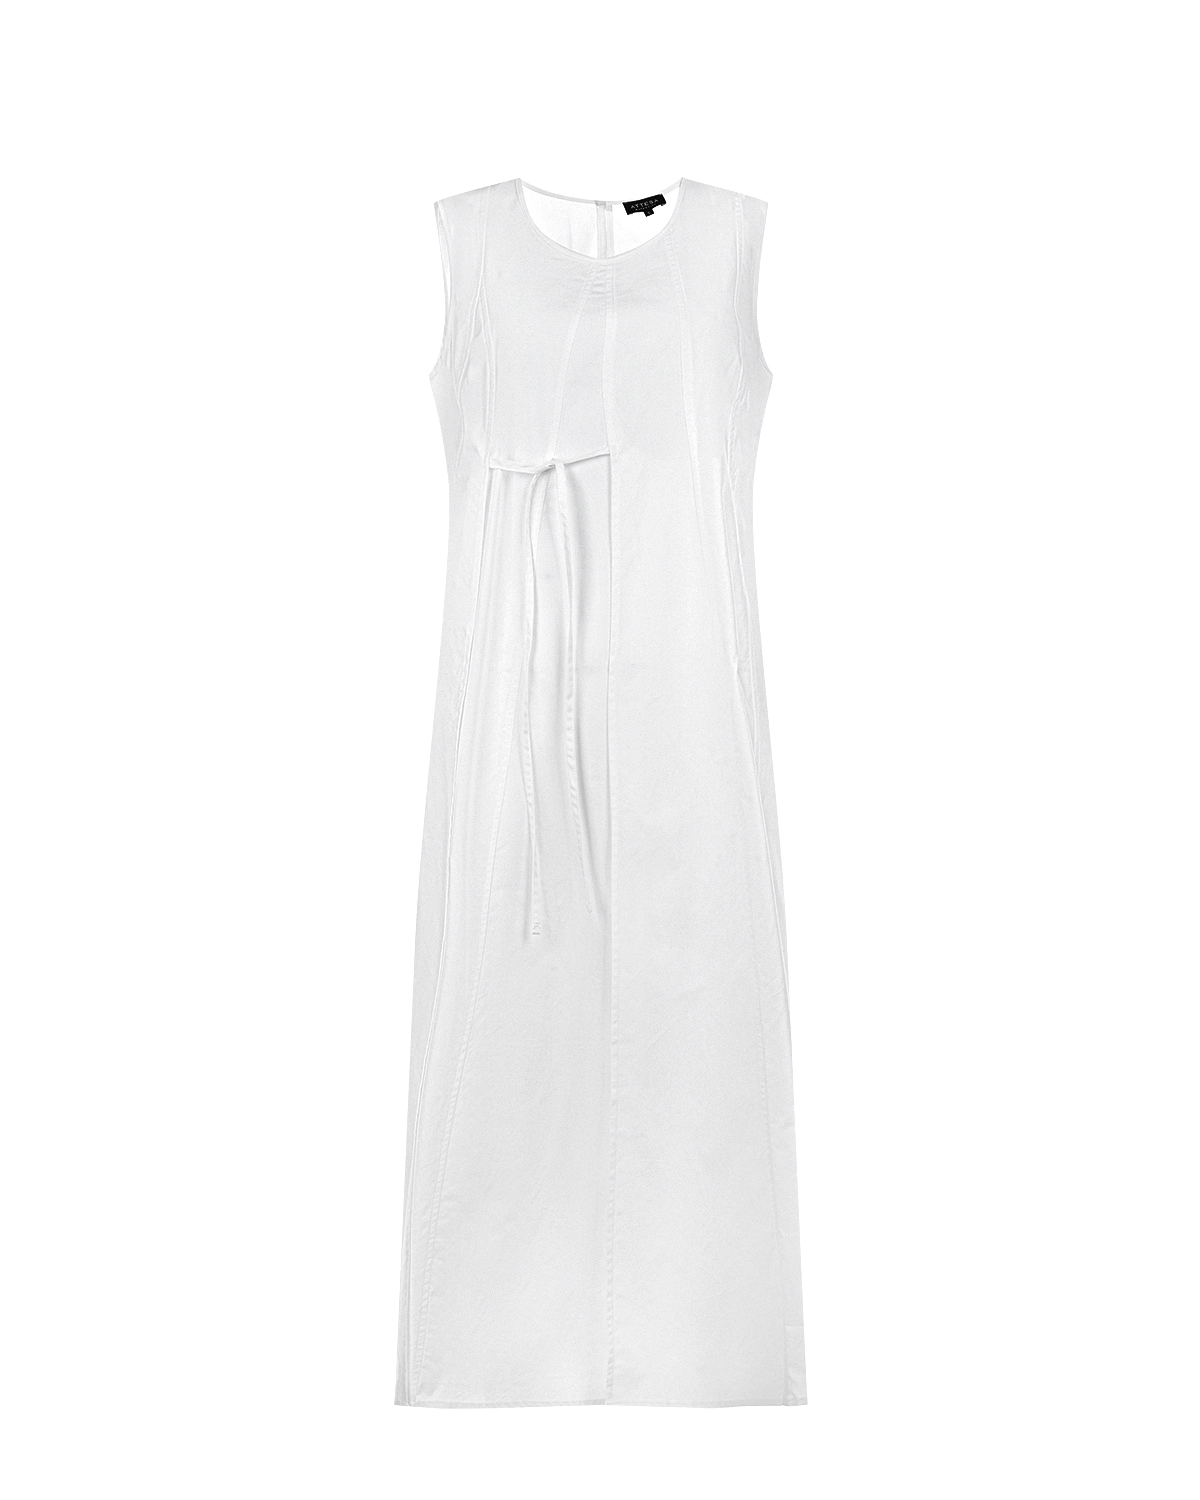 Белое платье для беременных без рукавов Attesa, размер 40, цвет белый